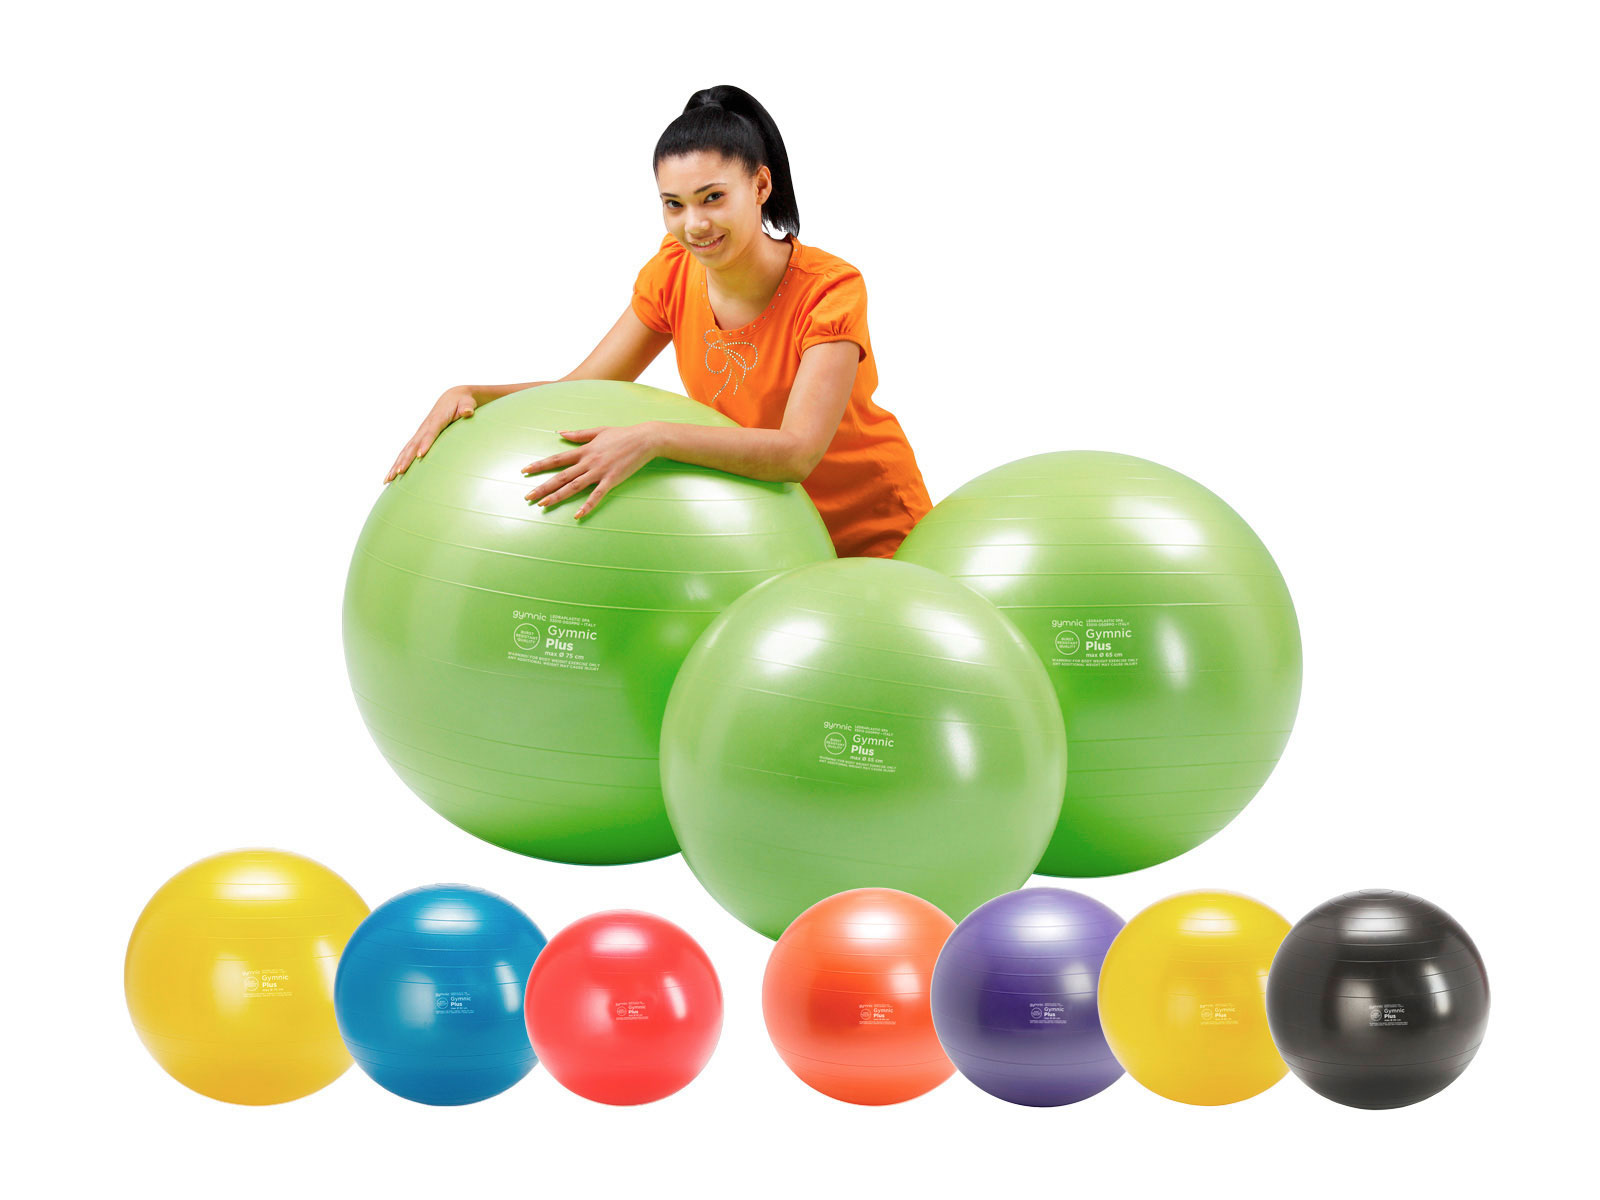 Ballon fitness Gymnic: Plus ballon polyvalent pour la maison